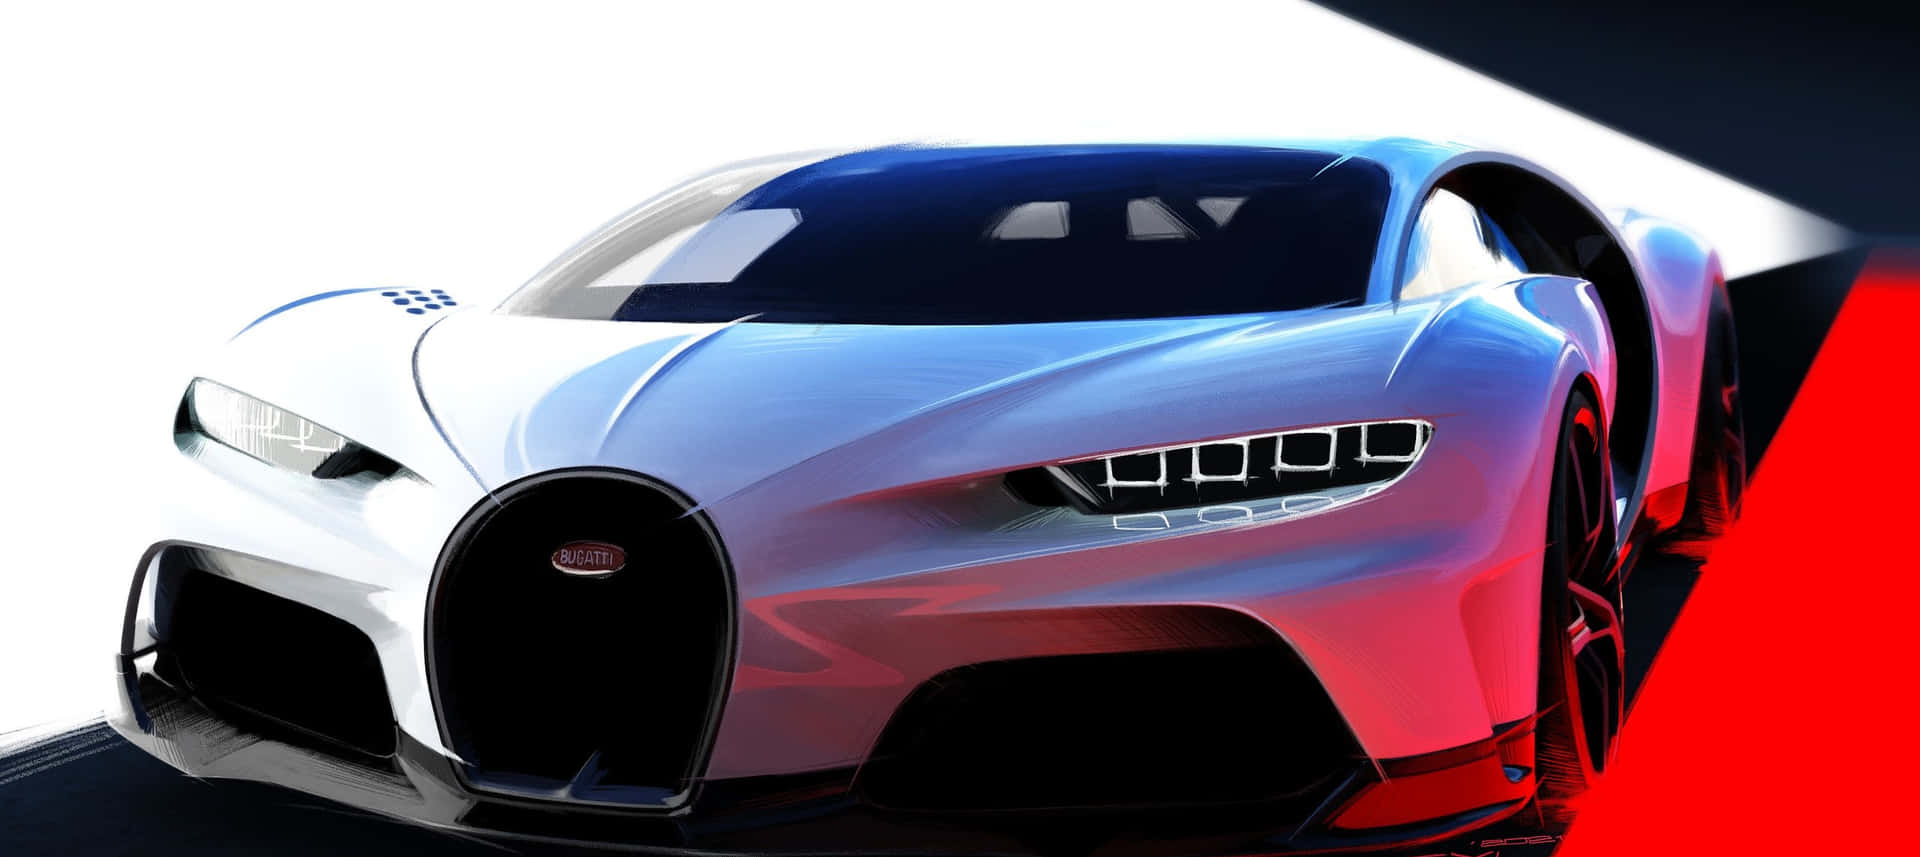 Geschwindigkeitund Stil - Das Einzigartig Raffinierte Design Von Bugatti